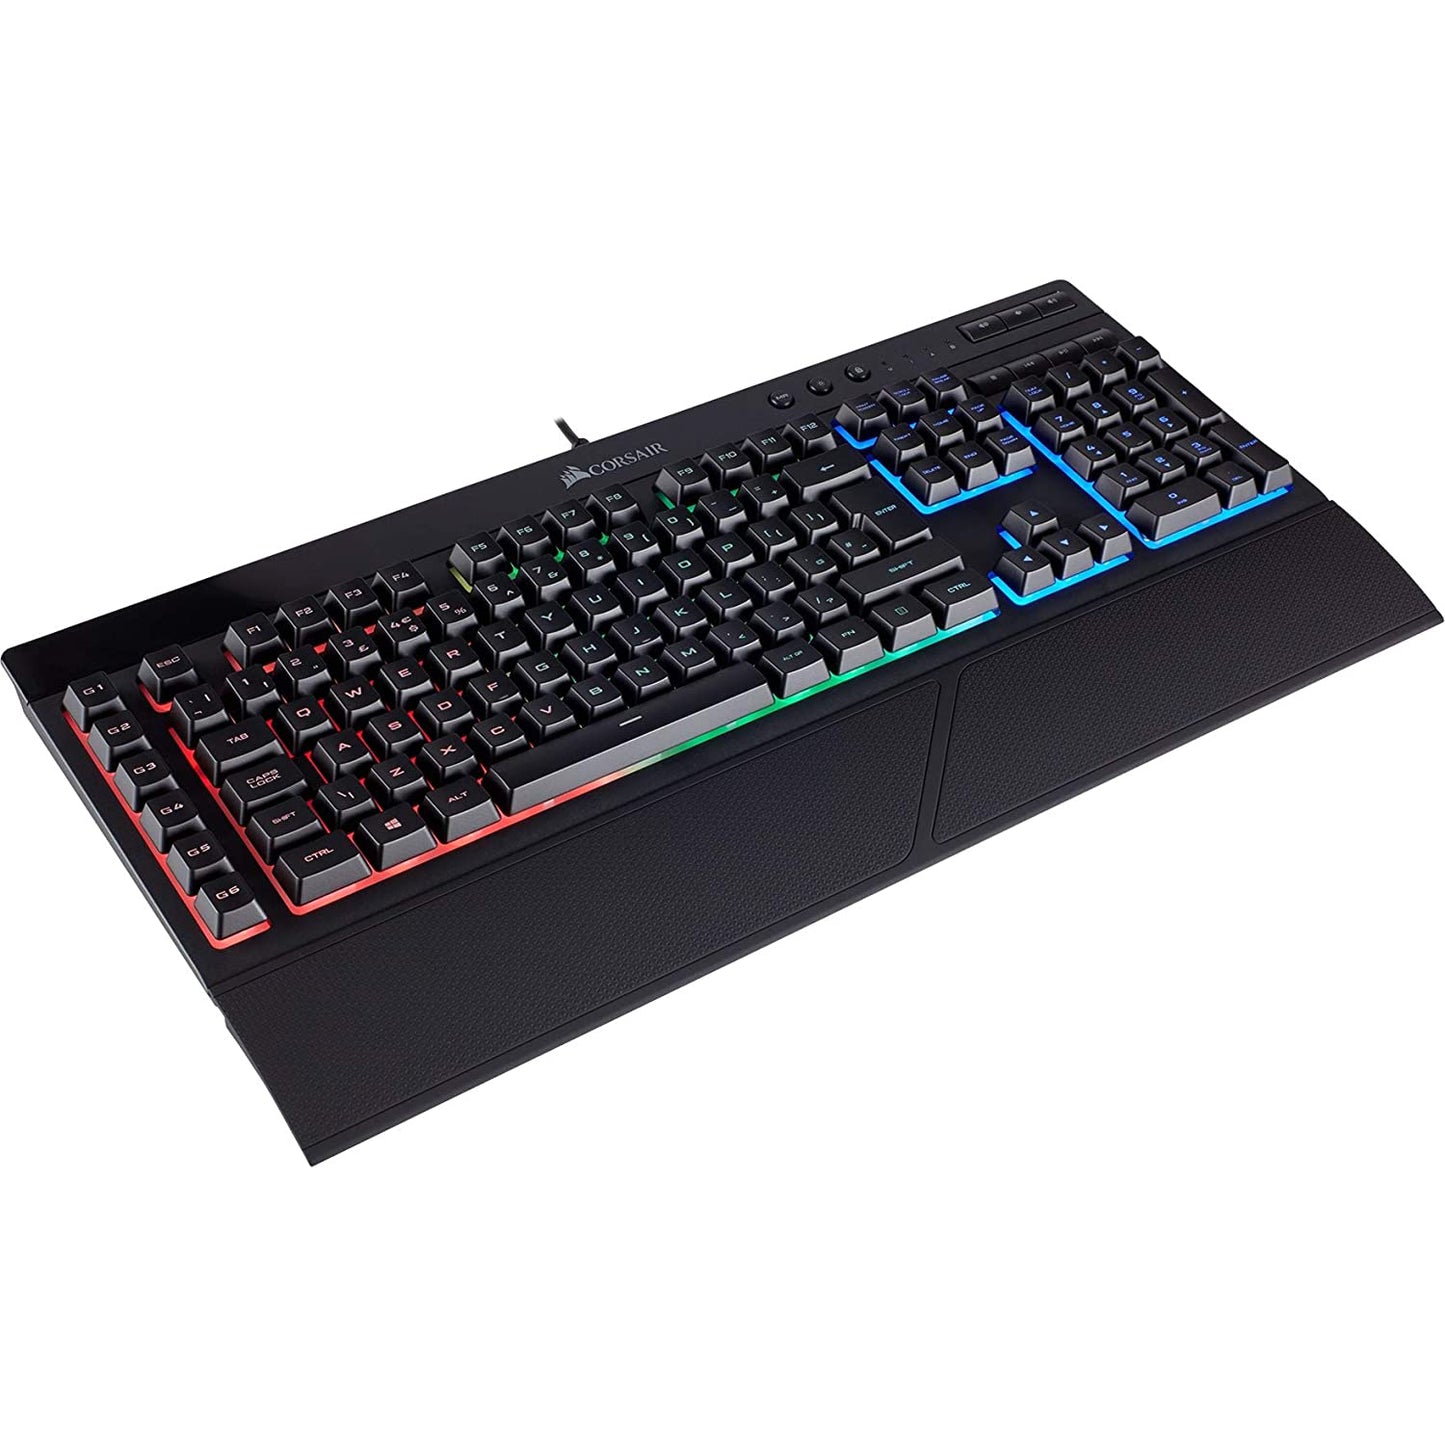 Corsair Wired K55 RGB Black Gaming USB Keyboard UK Layout